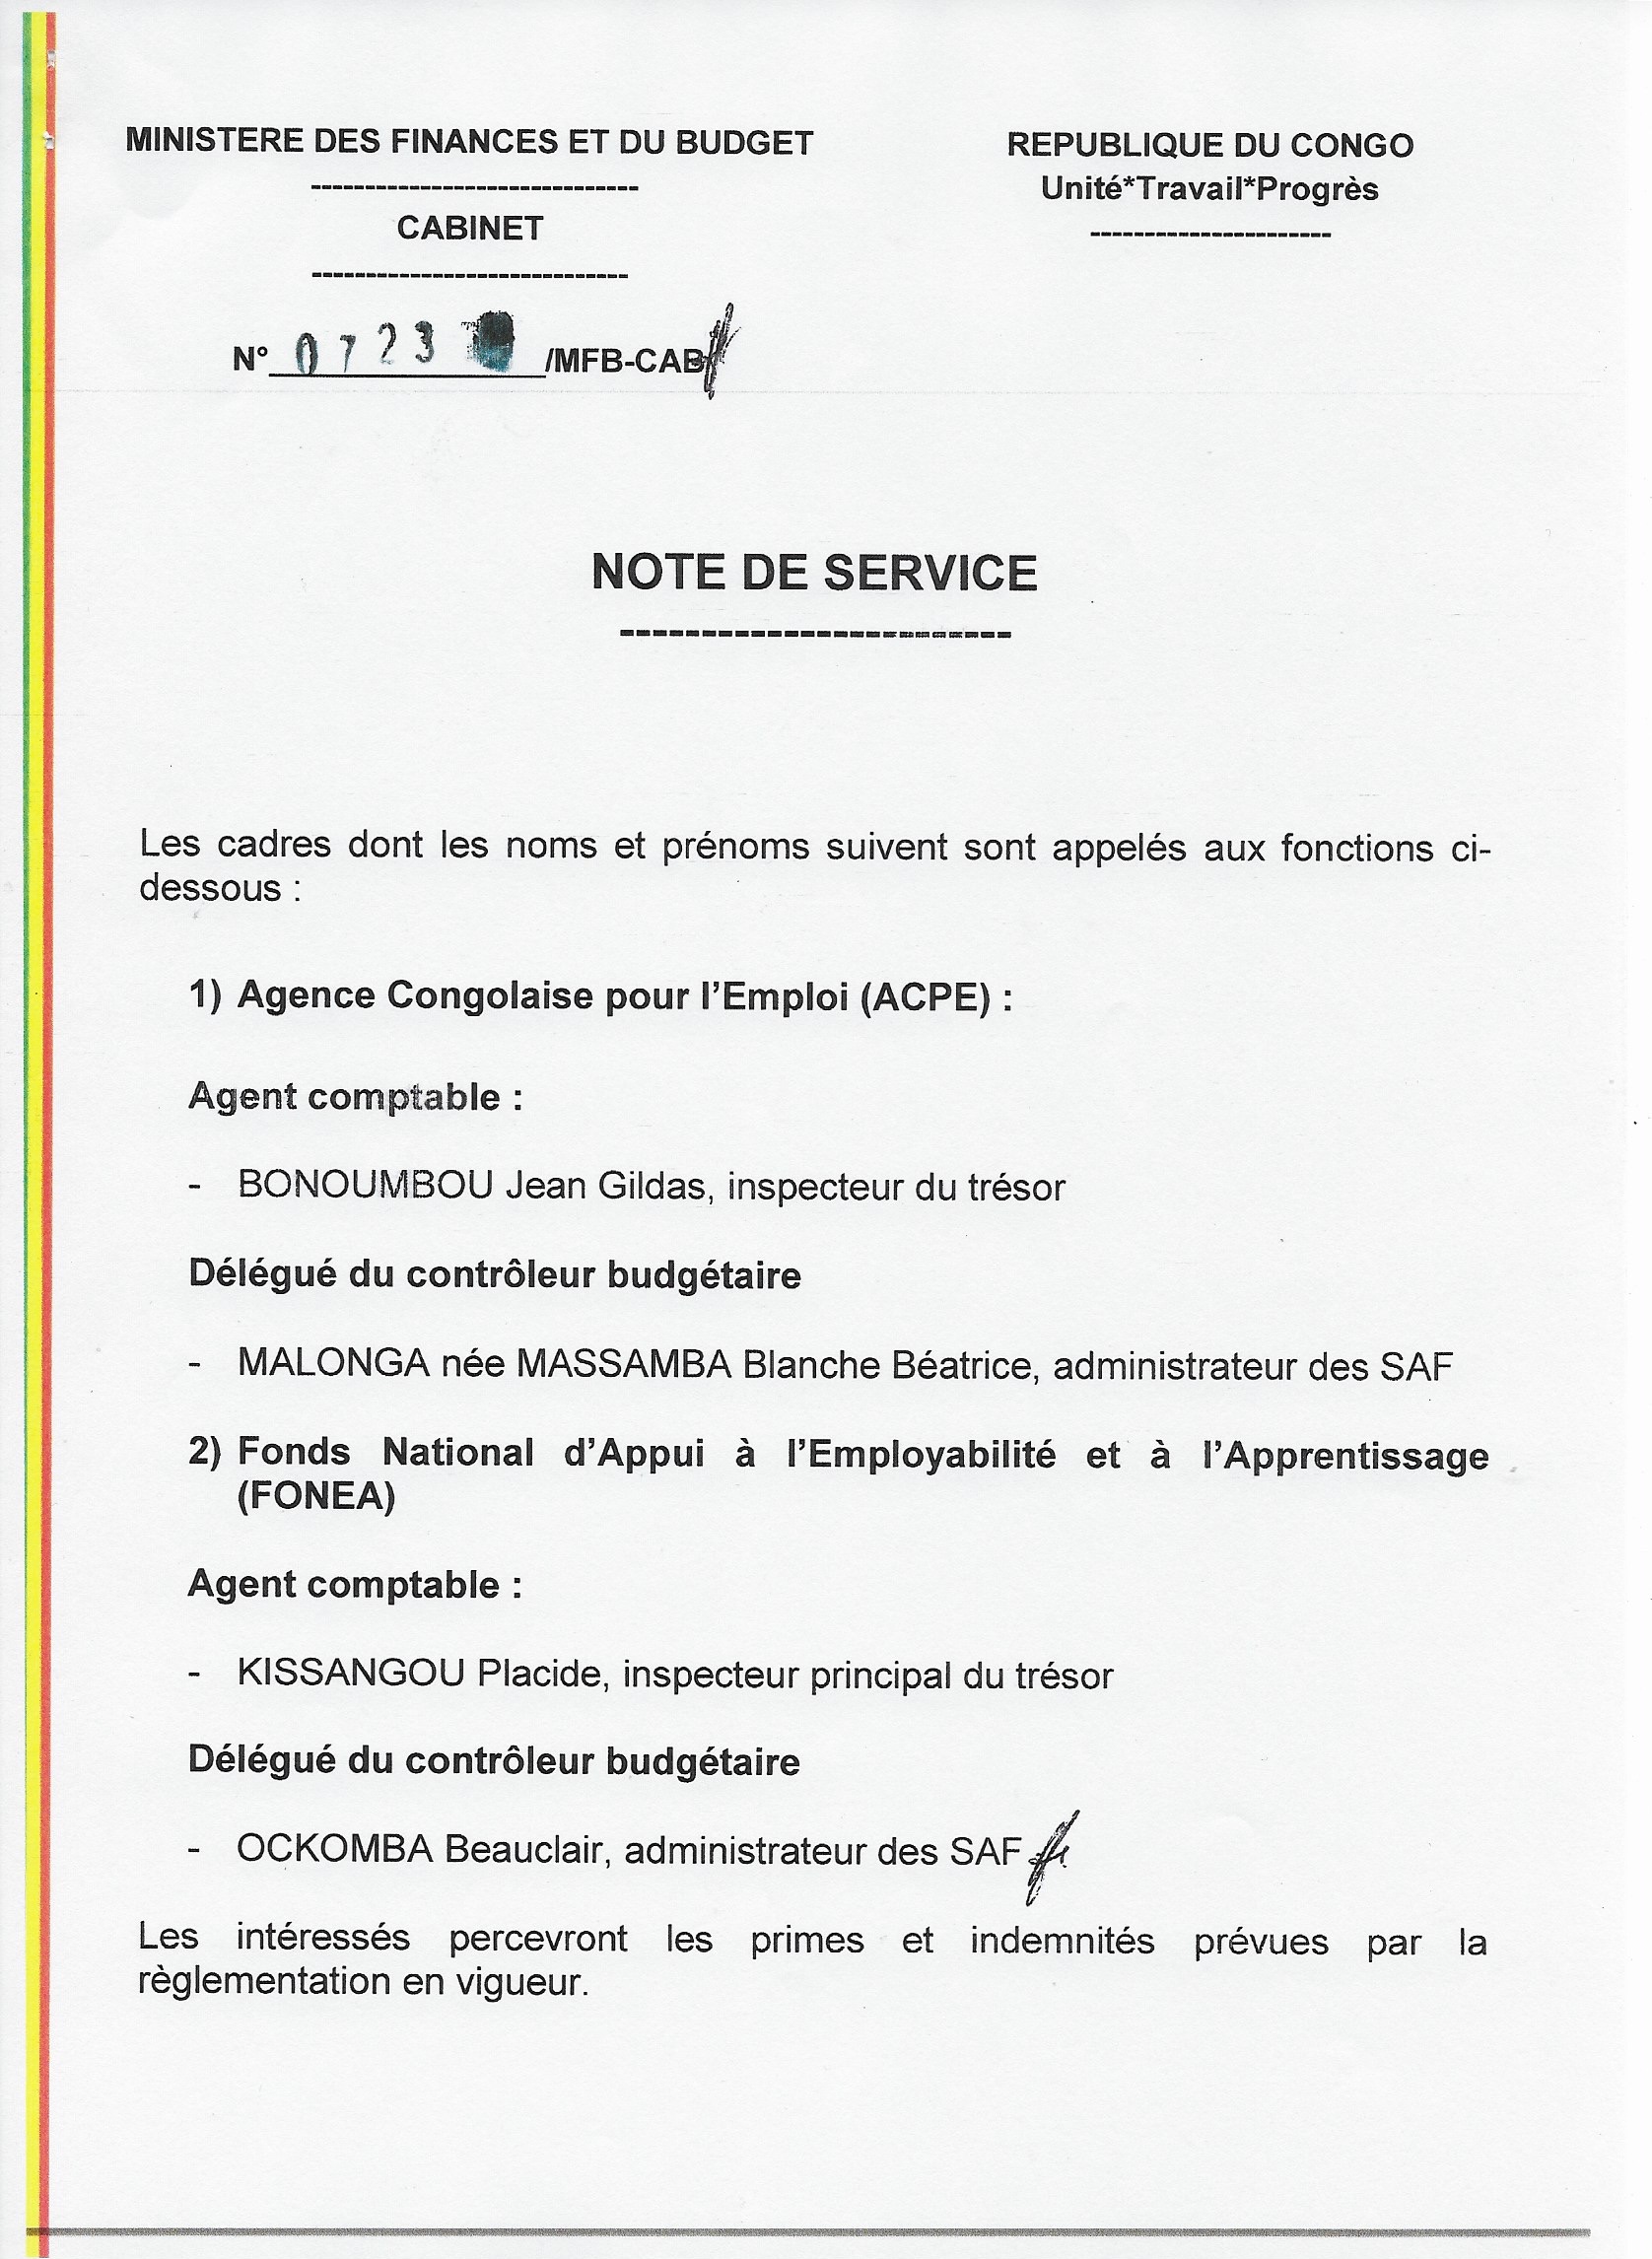 Note de service n°723/MFBCAB relative aux nominations à la Direction